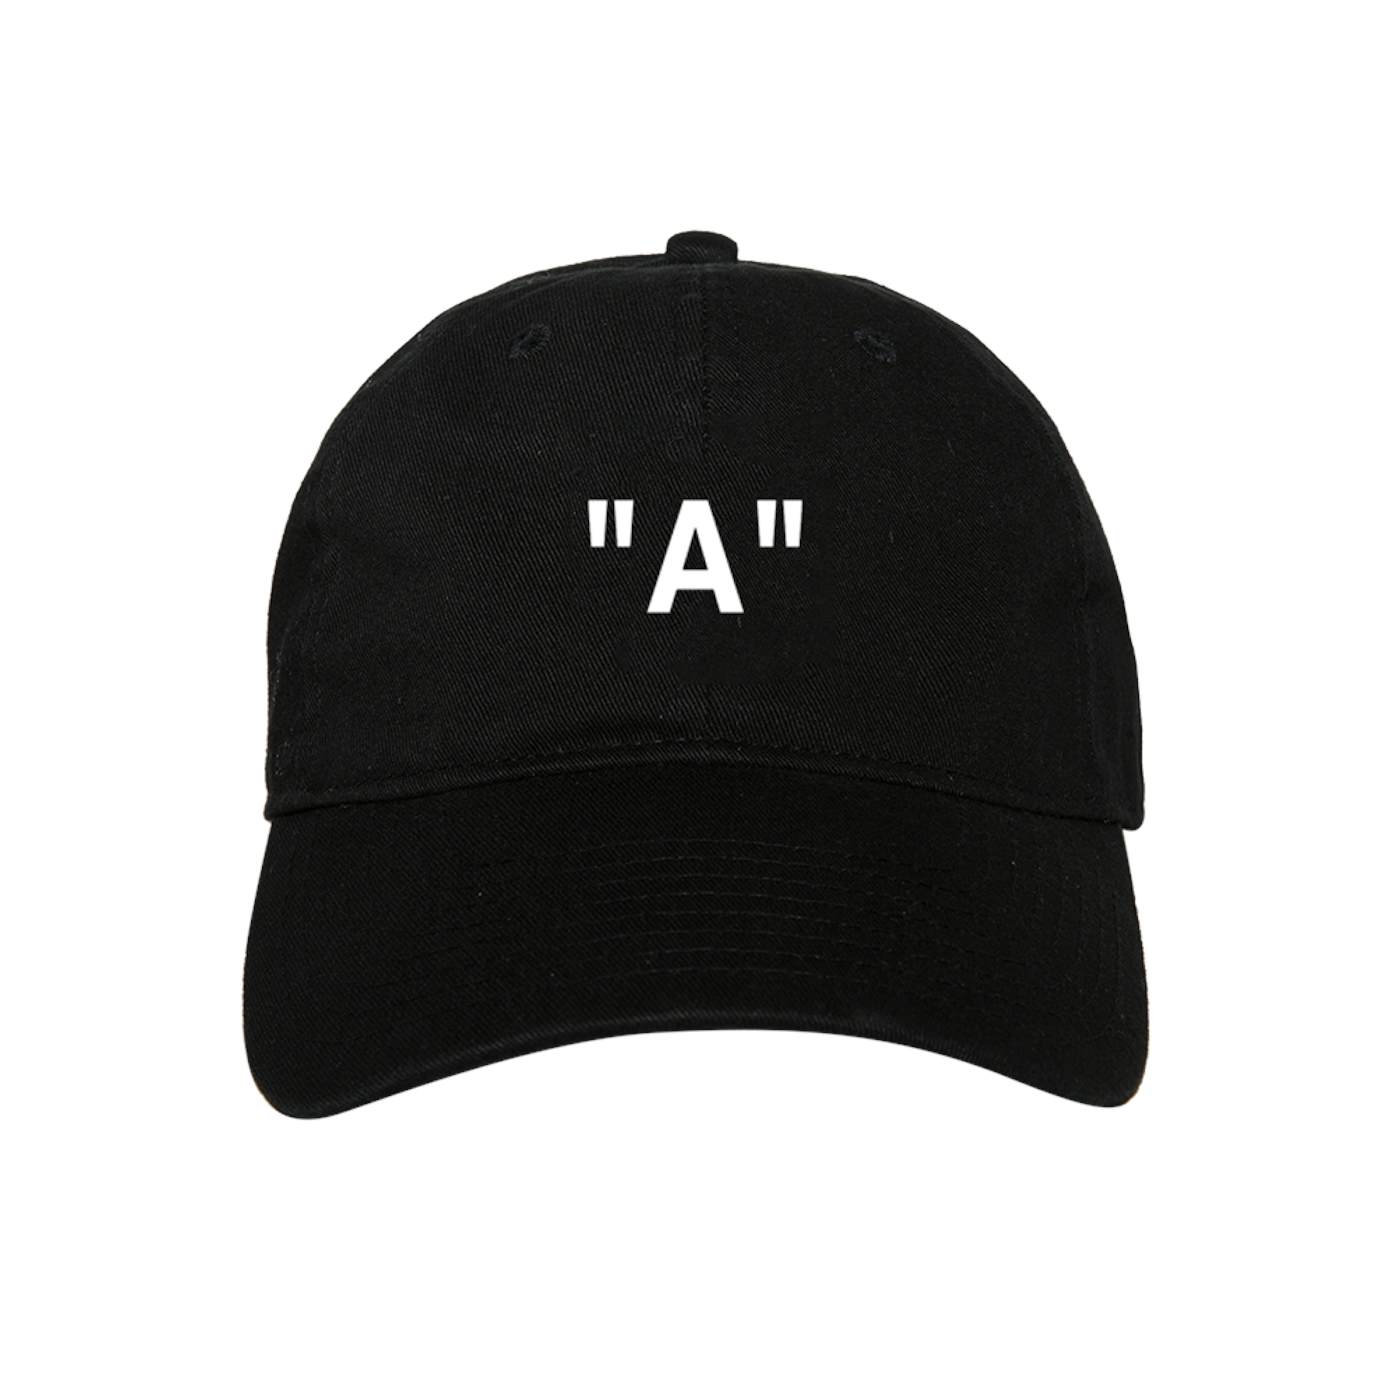 USHER "A" Dad Hat + Digital